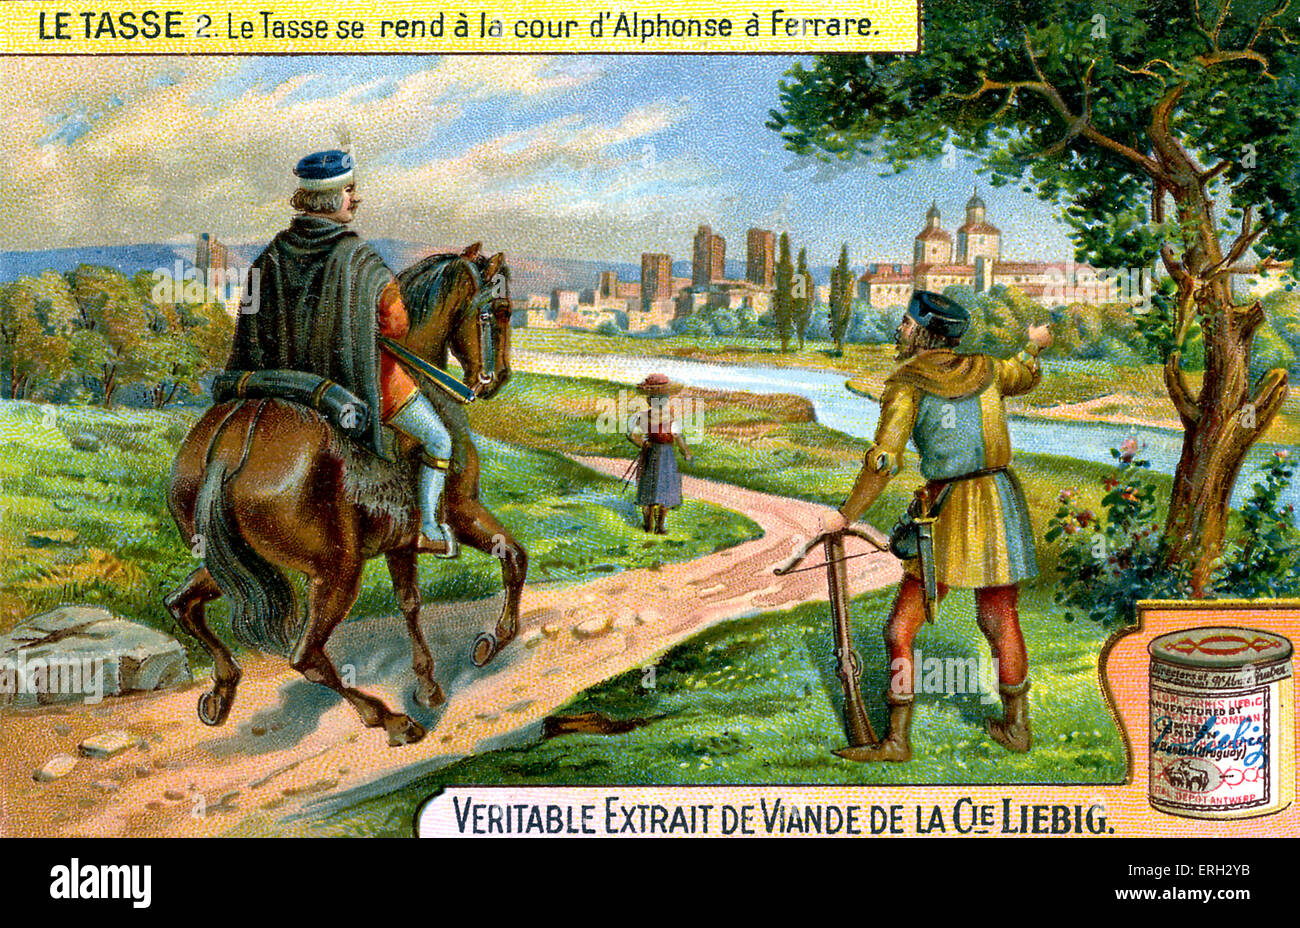 Torquato Tasso aller à la cour d'Alphonse de Ferrare, d'être sous son patronage. Publicité de Liebig, extraits de viande, Banque D'Images